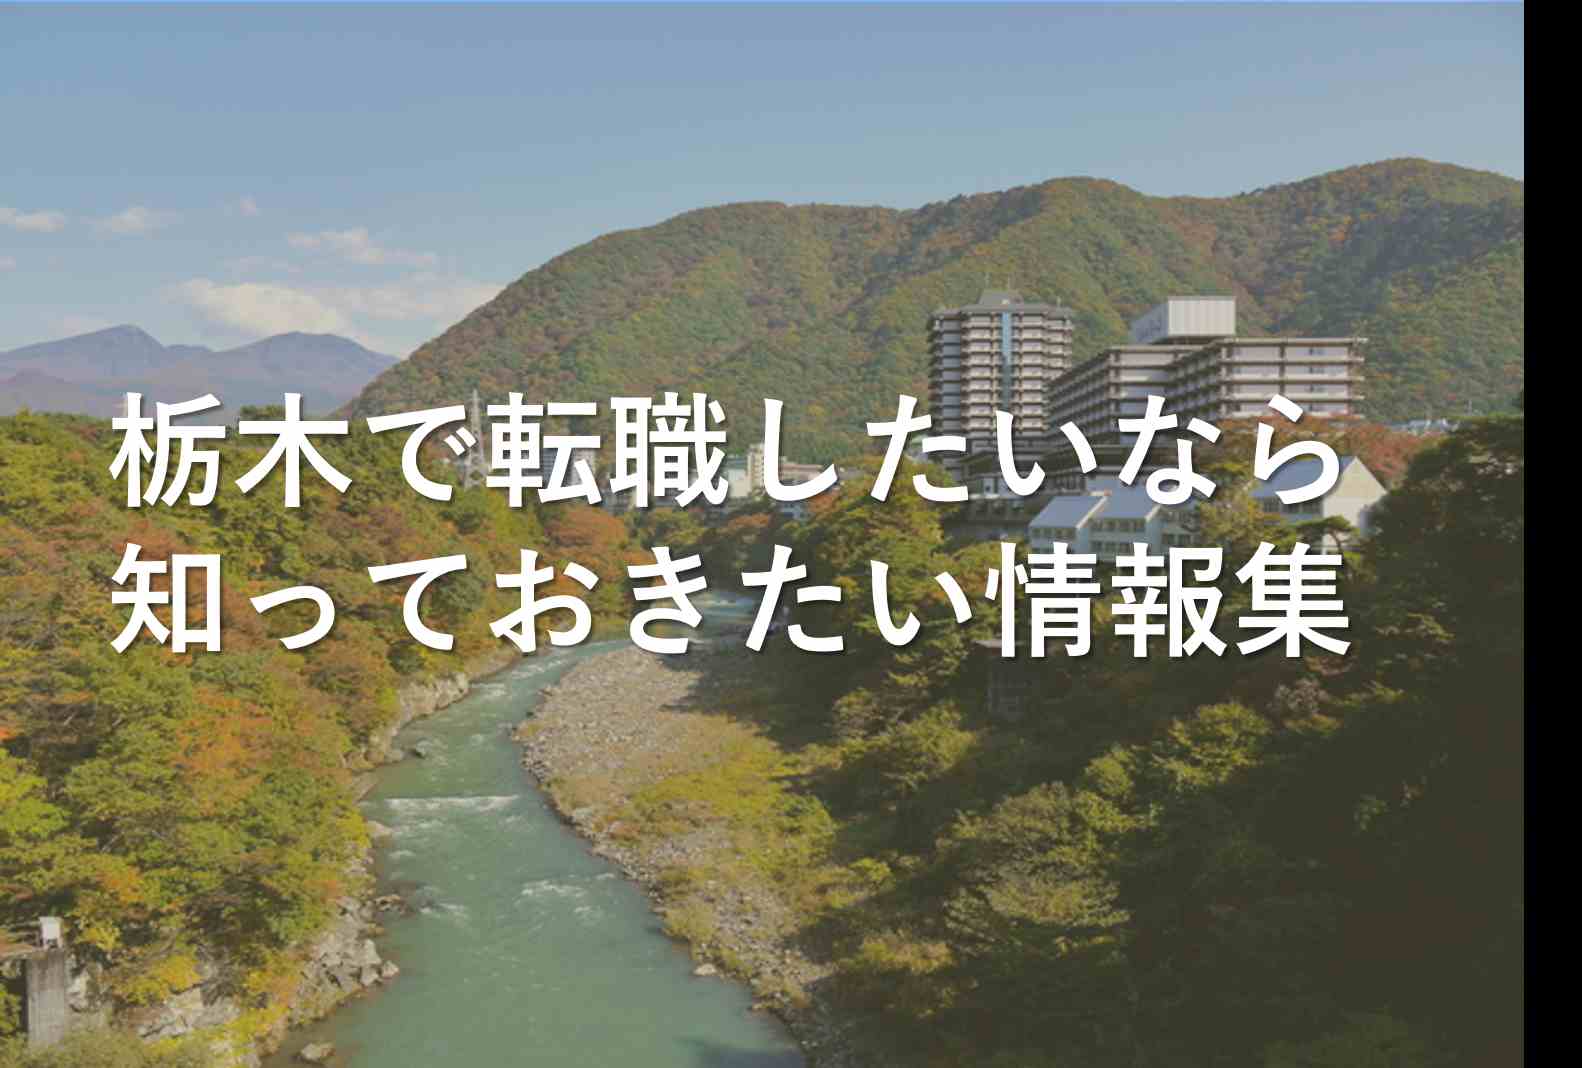 栃木への転職や移住に役立つアドバイス